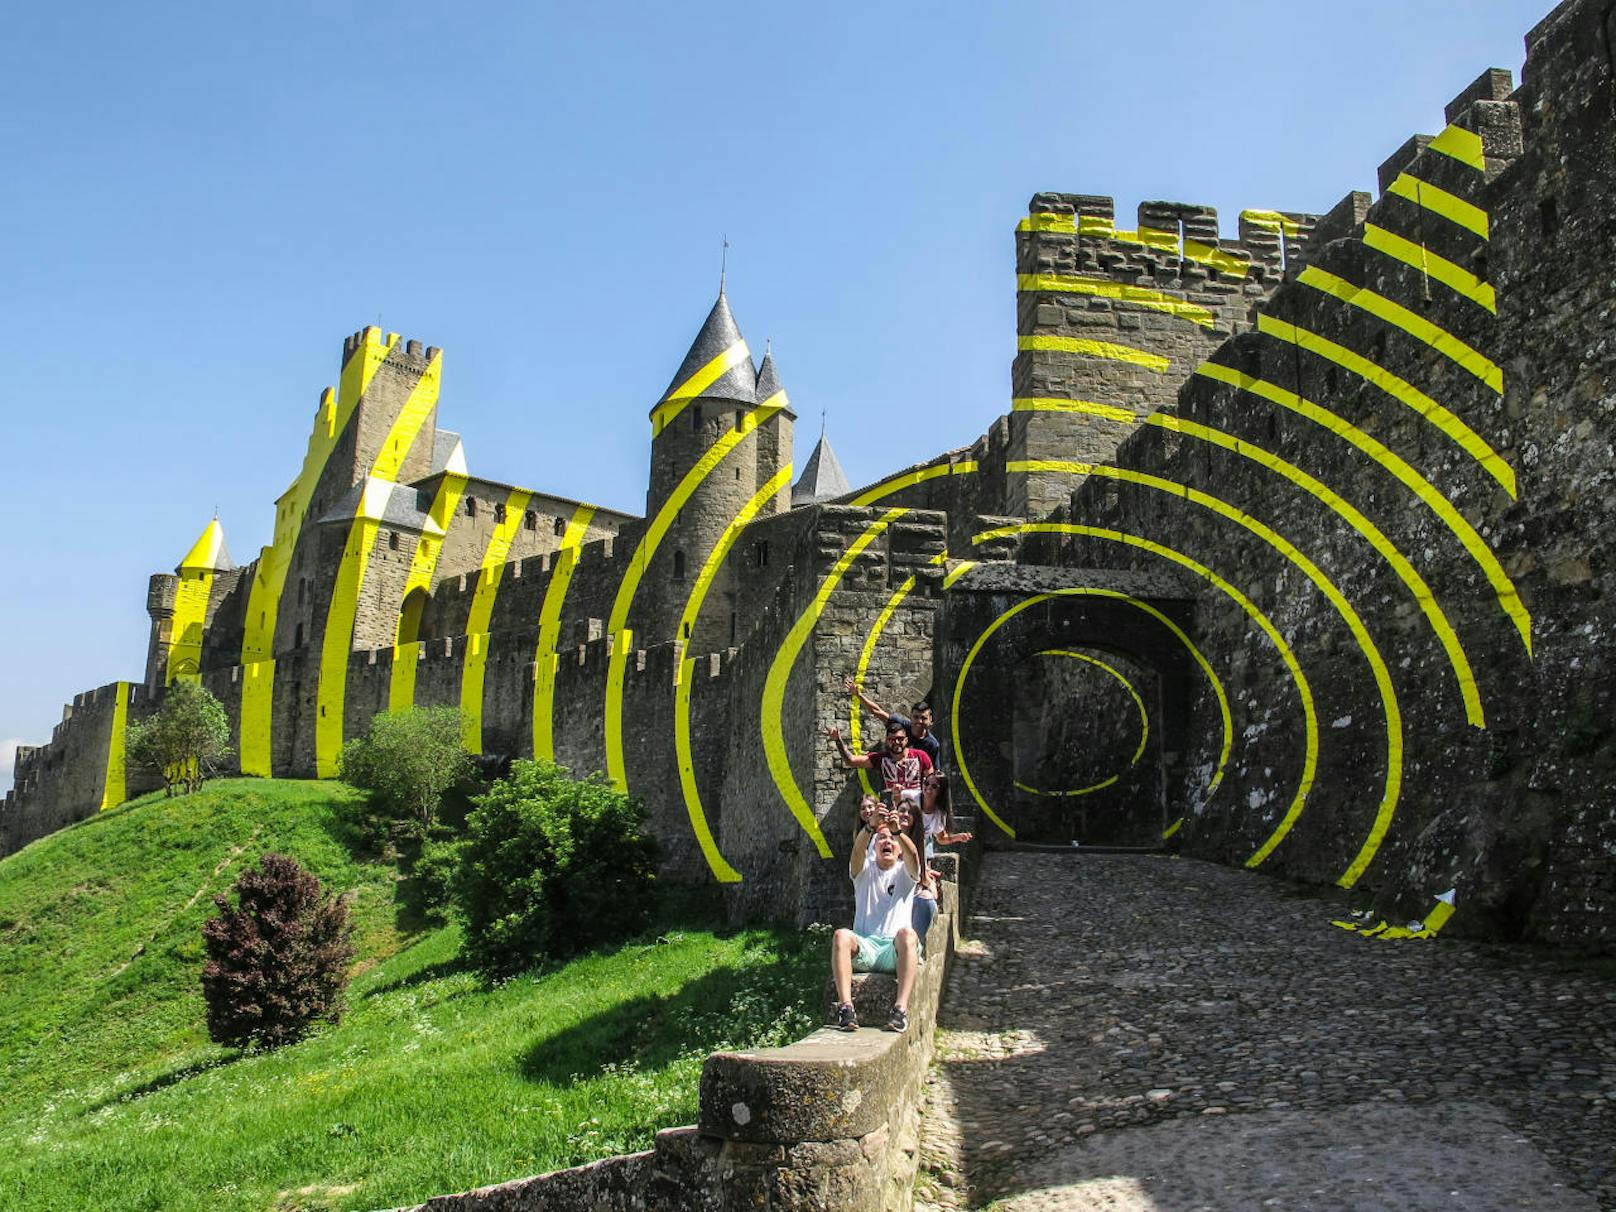 ... über der gleichnamigen Stadt im Südwesten von Frankreich. Der Schweizer Künstler Felice Varini legte riesige, gelbe Kreise aus Aluminiumstreifen um die gesamte Festung.